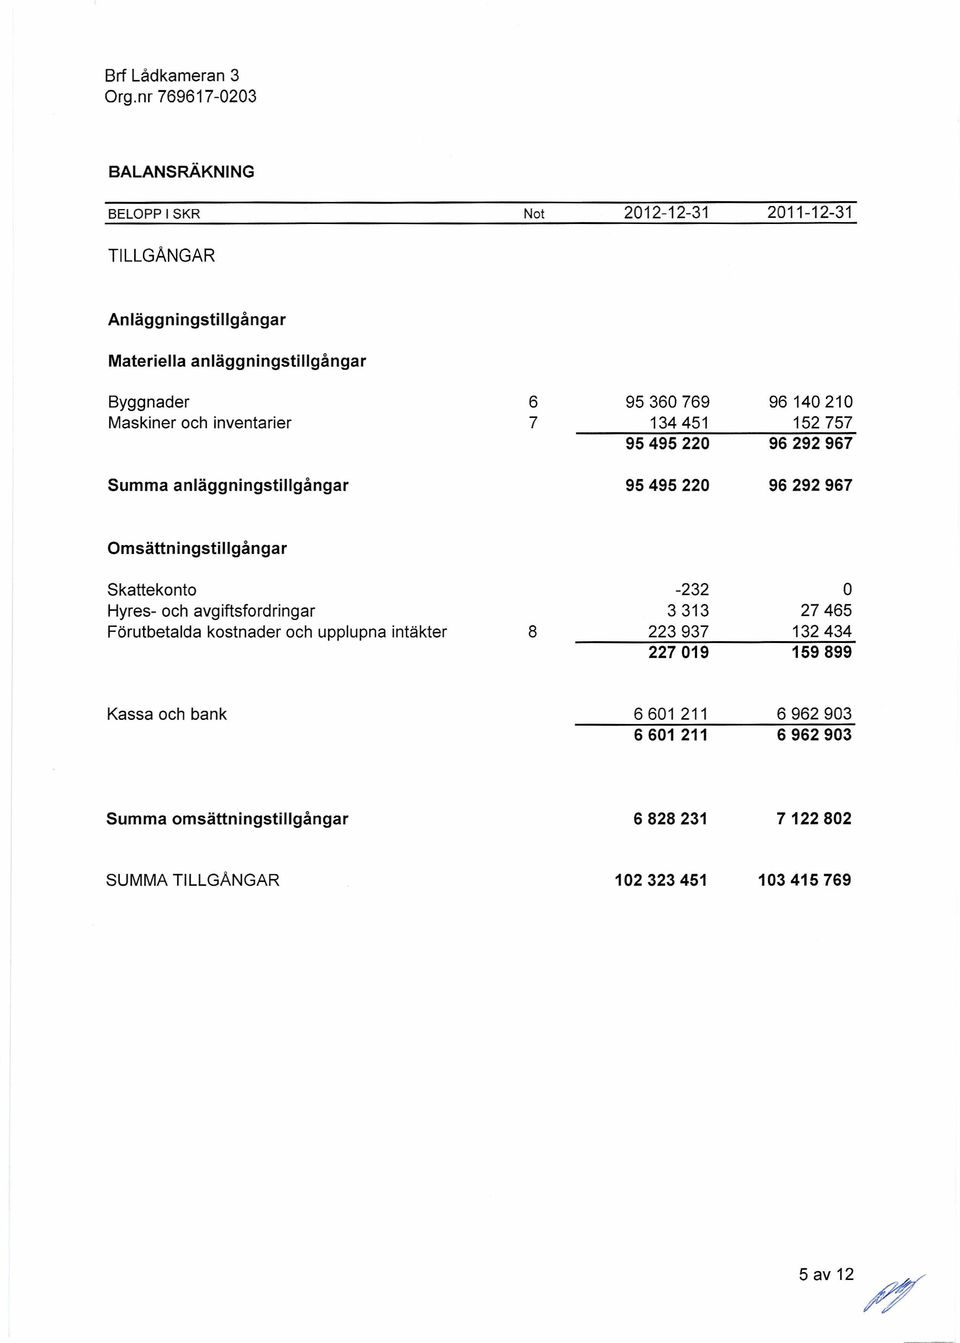 Omsättningstillgångar Skatlekonto -232 O Hyres- och avgiftsfordringar 3313 27465 Förutbetalda kostnader och upplupna intäkter 8 223937